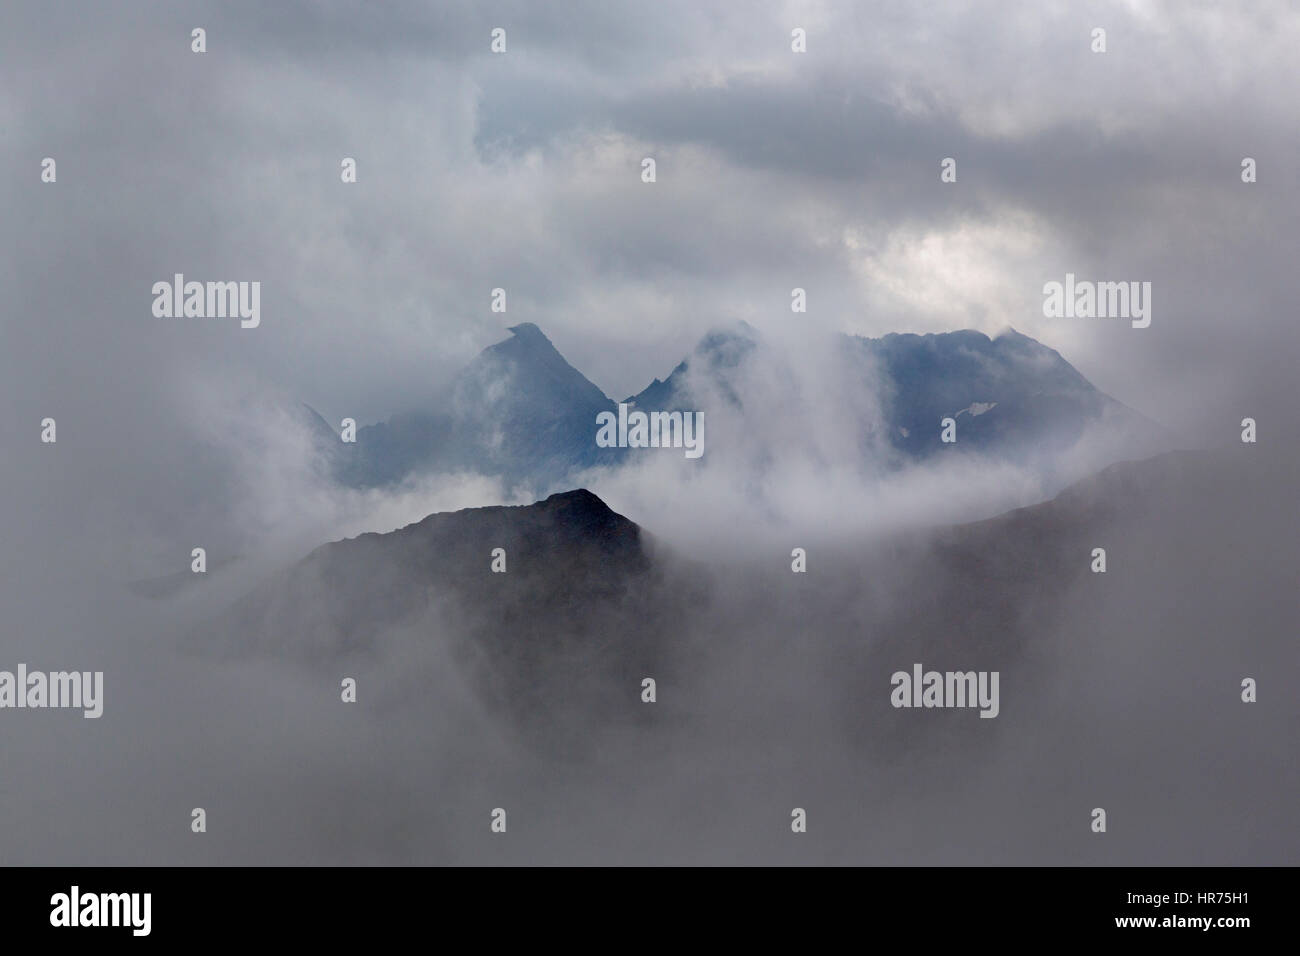 Mountain group with clouds, Hohe Tauern mountain range, Austria, Europe Stock Photo